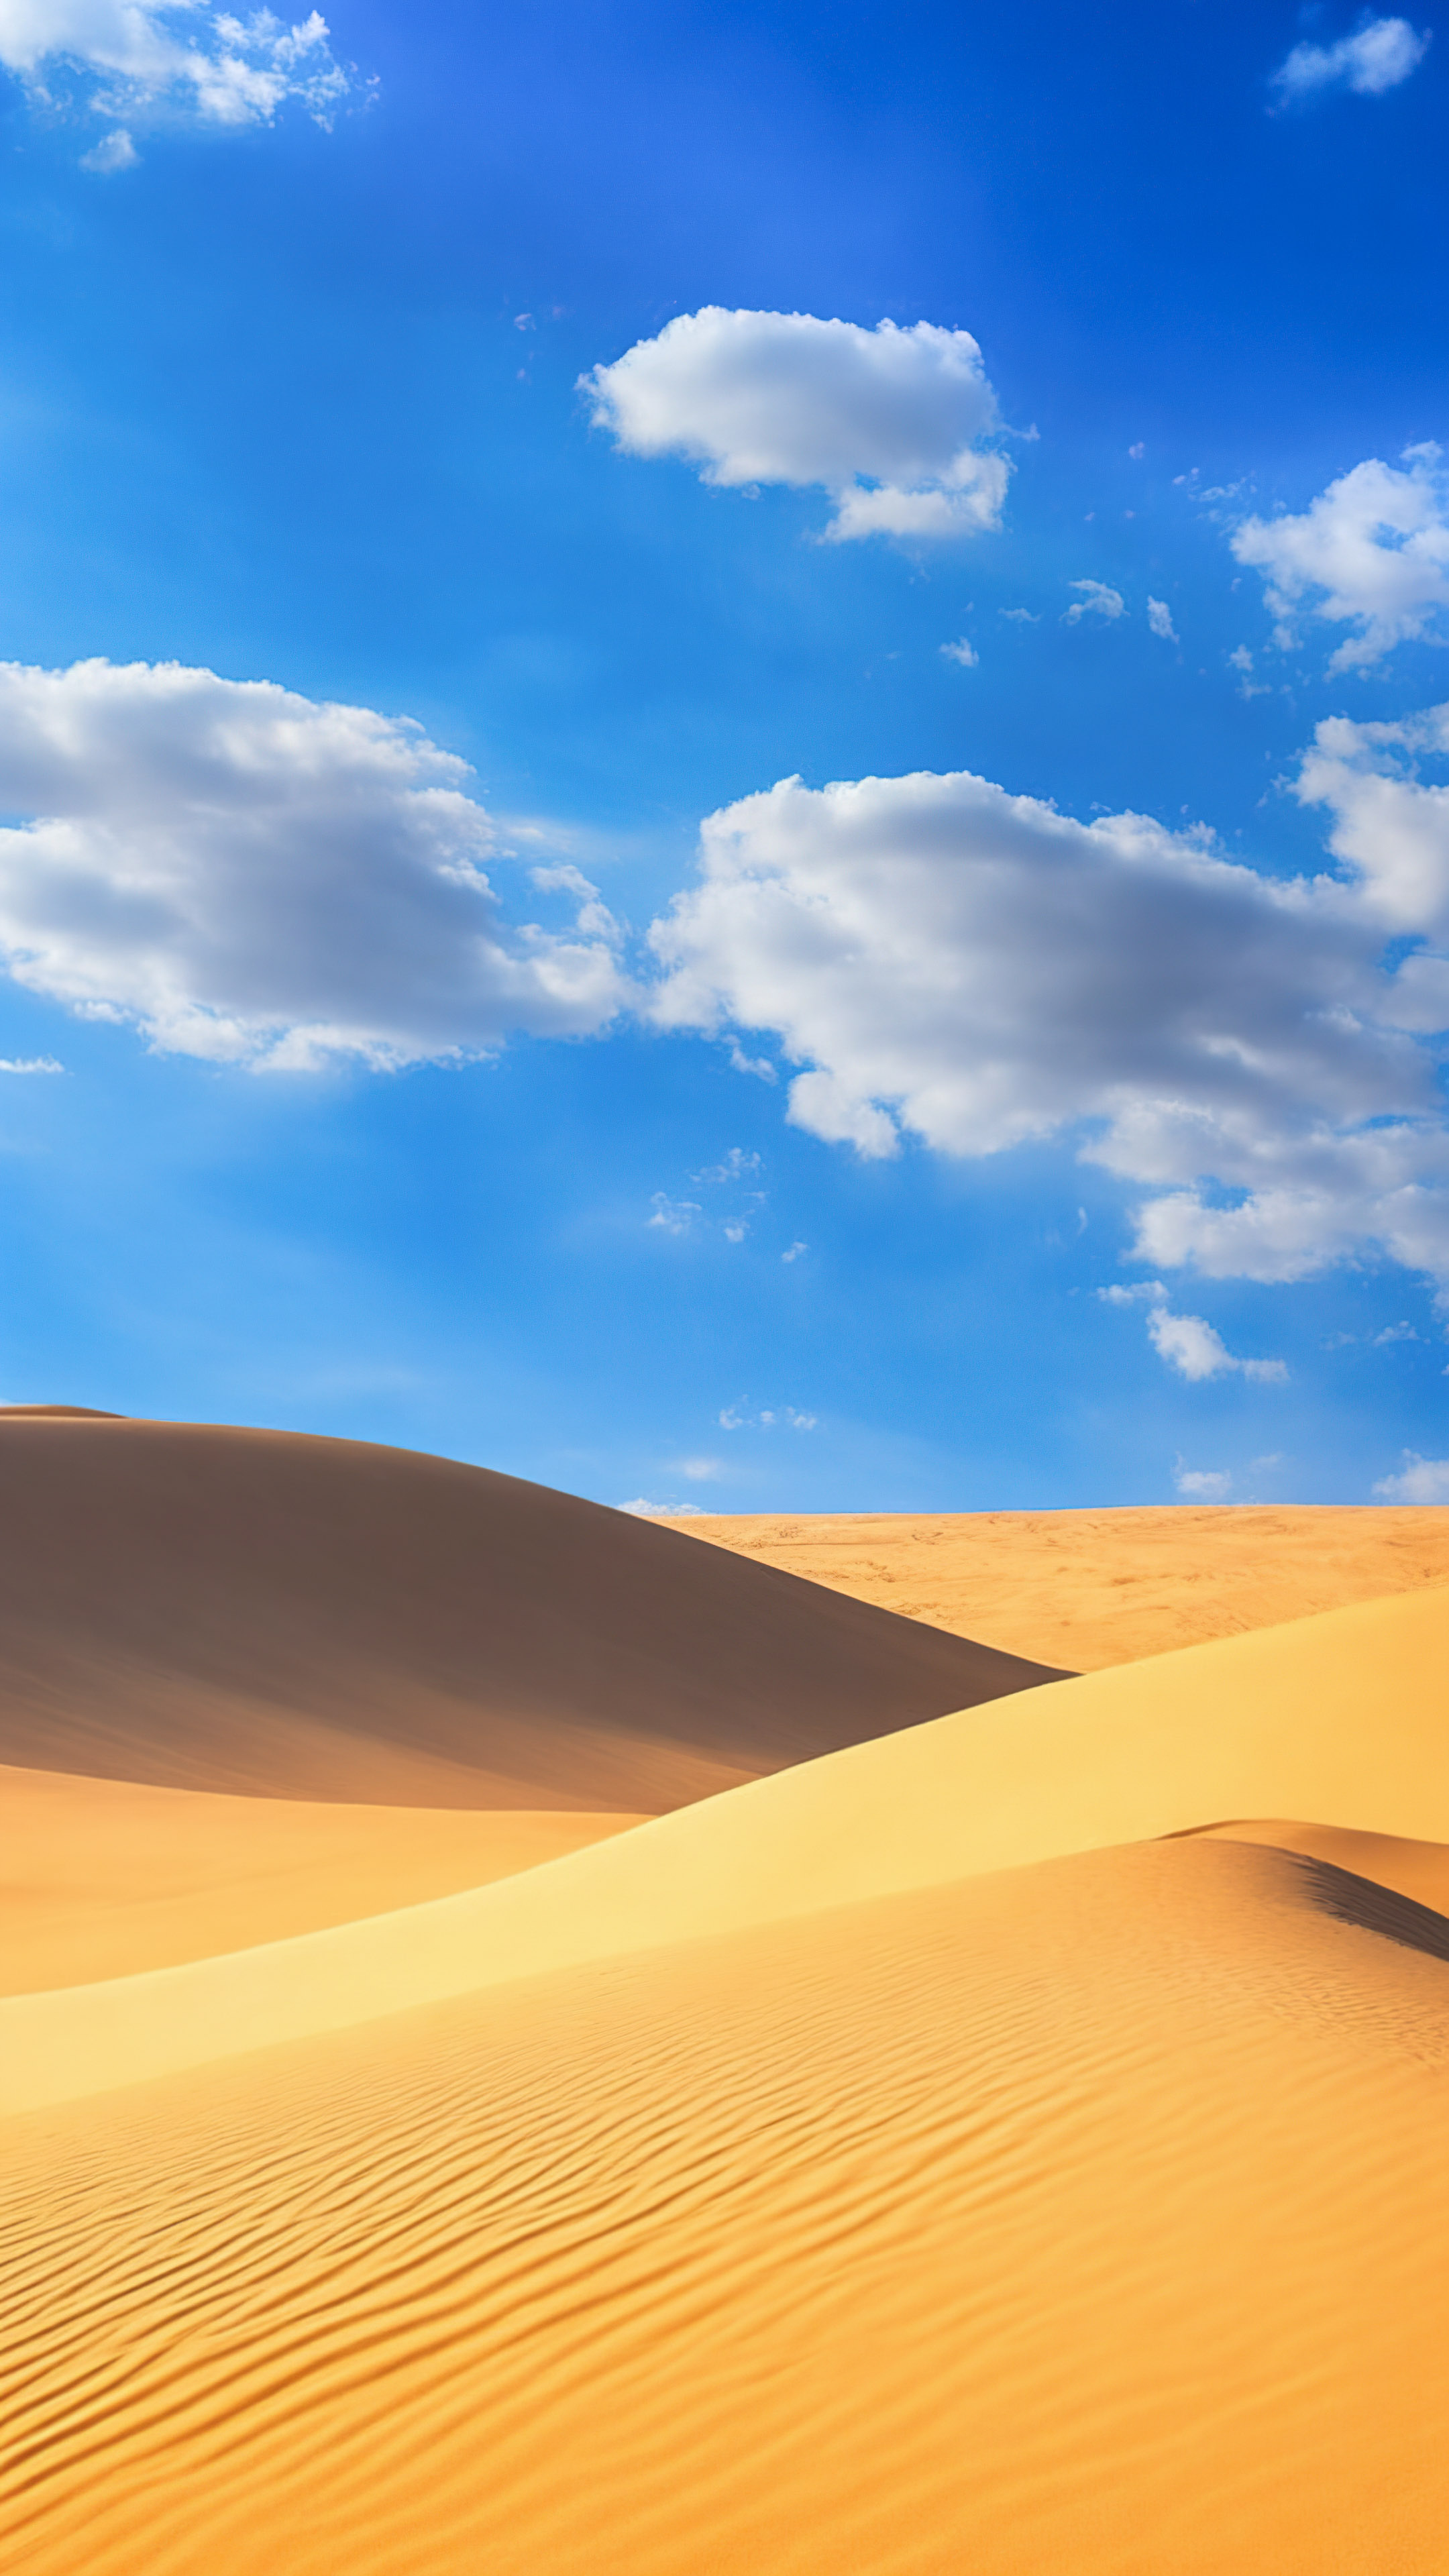 Savourez la quiétude de notre fond d'écran de ciel, présentant un paysage désertique serein avec des dunes de sable s'étendant jusqu'à l'horizon sous un vaste ciel bleu.